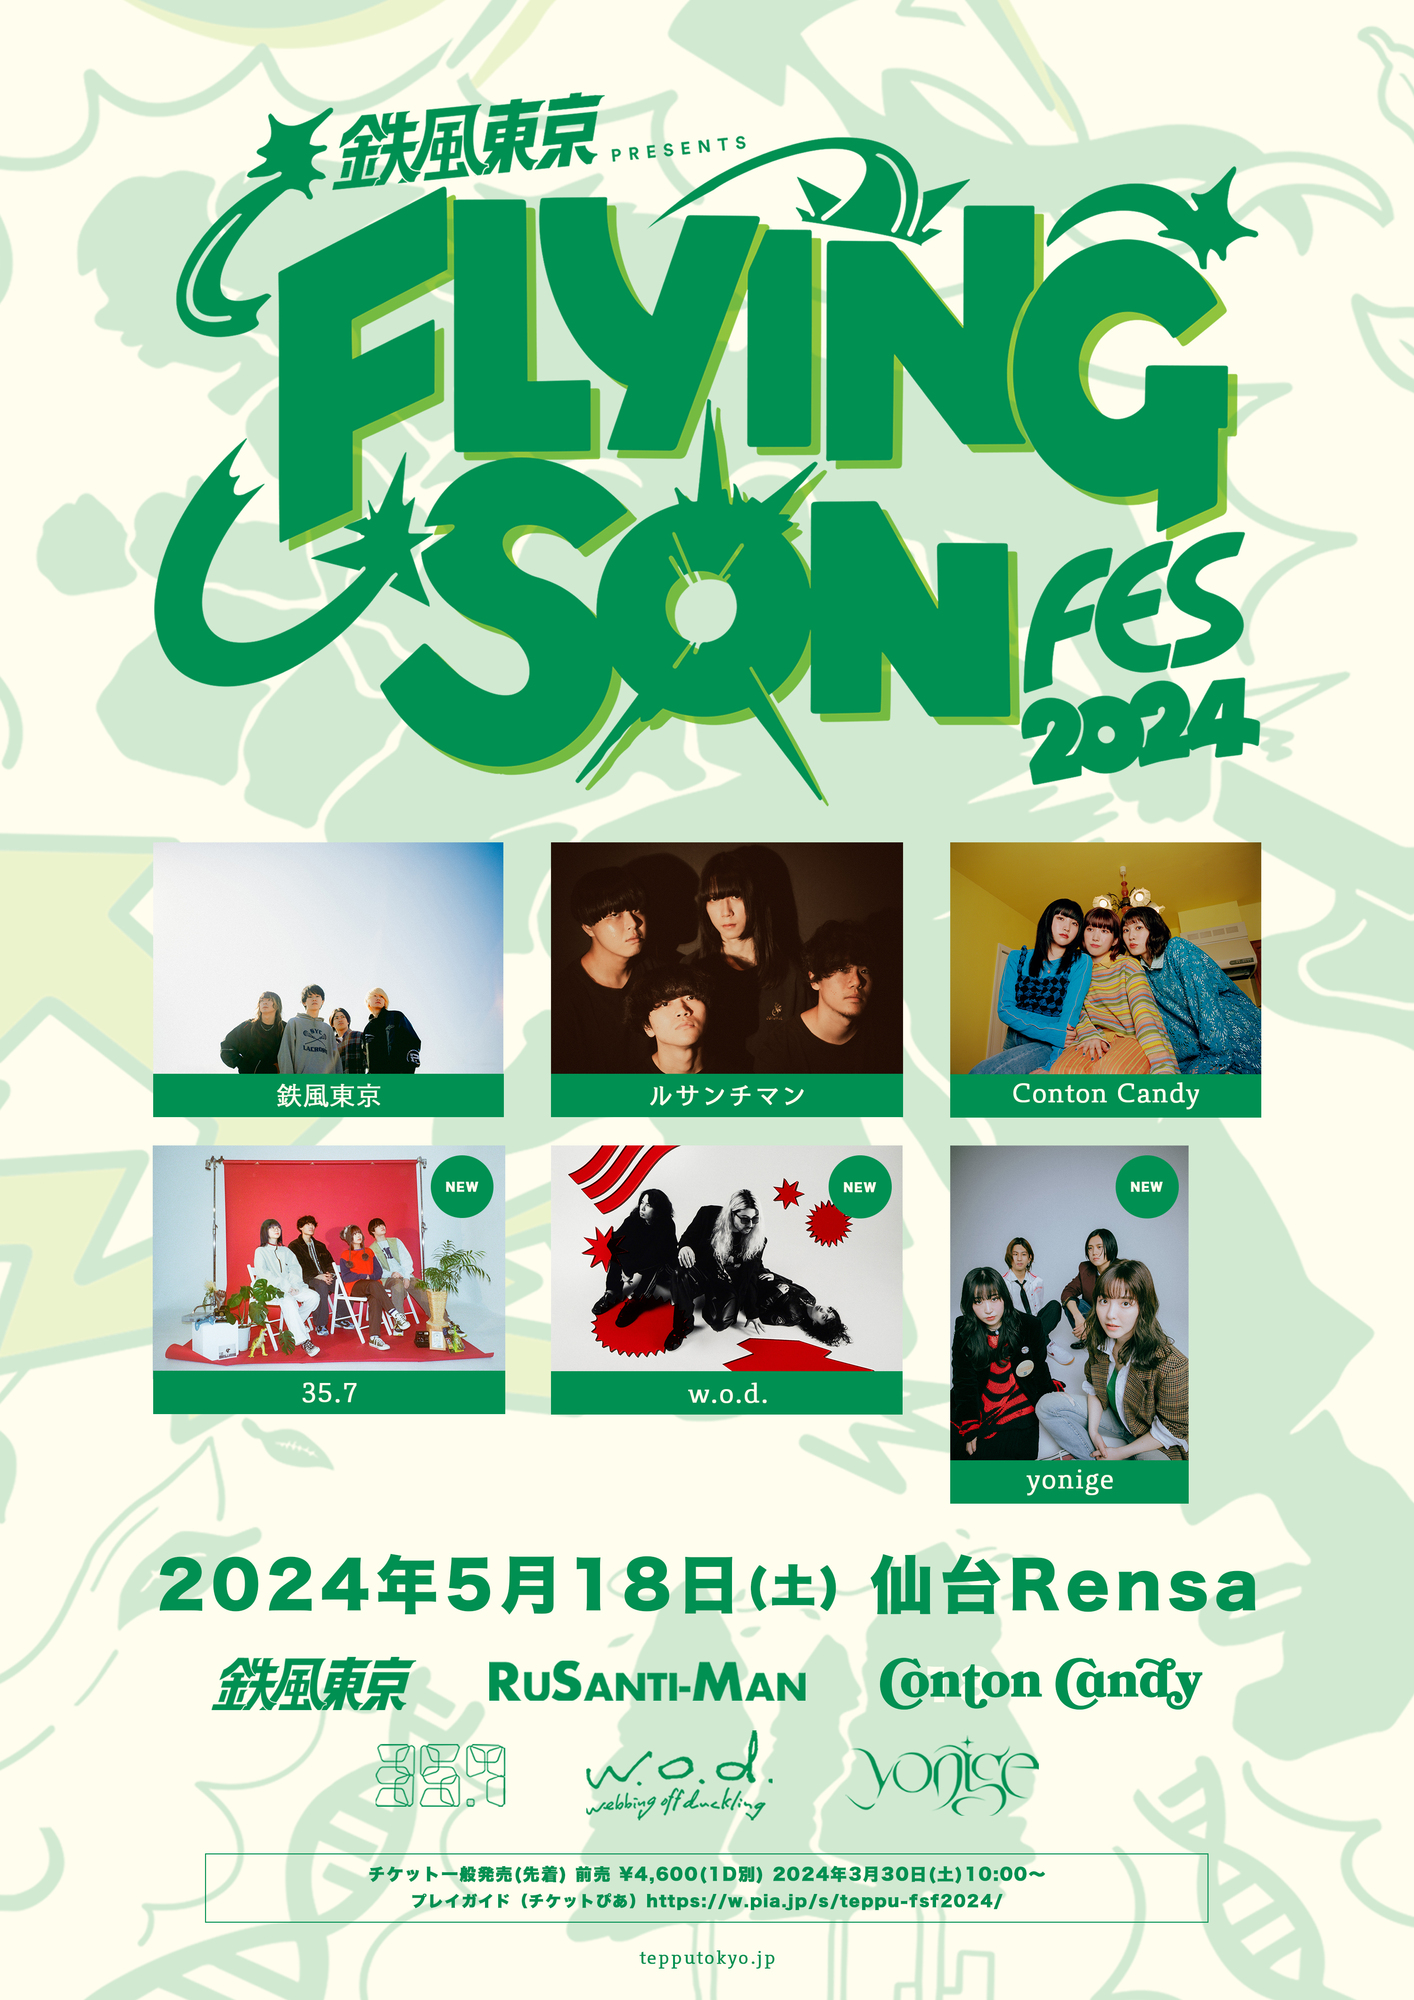 鉄風東京 presents FLYING SON FES 2024 | yonige OFFICIAL HOME PAGE